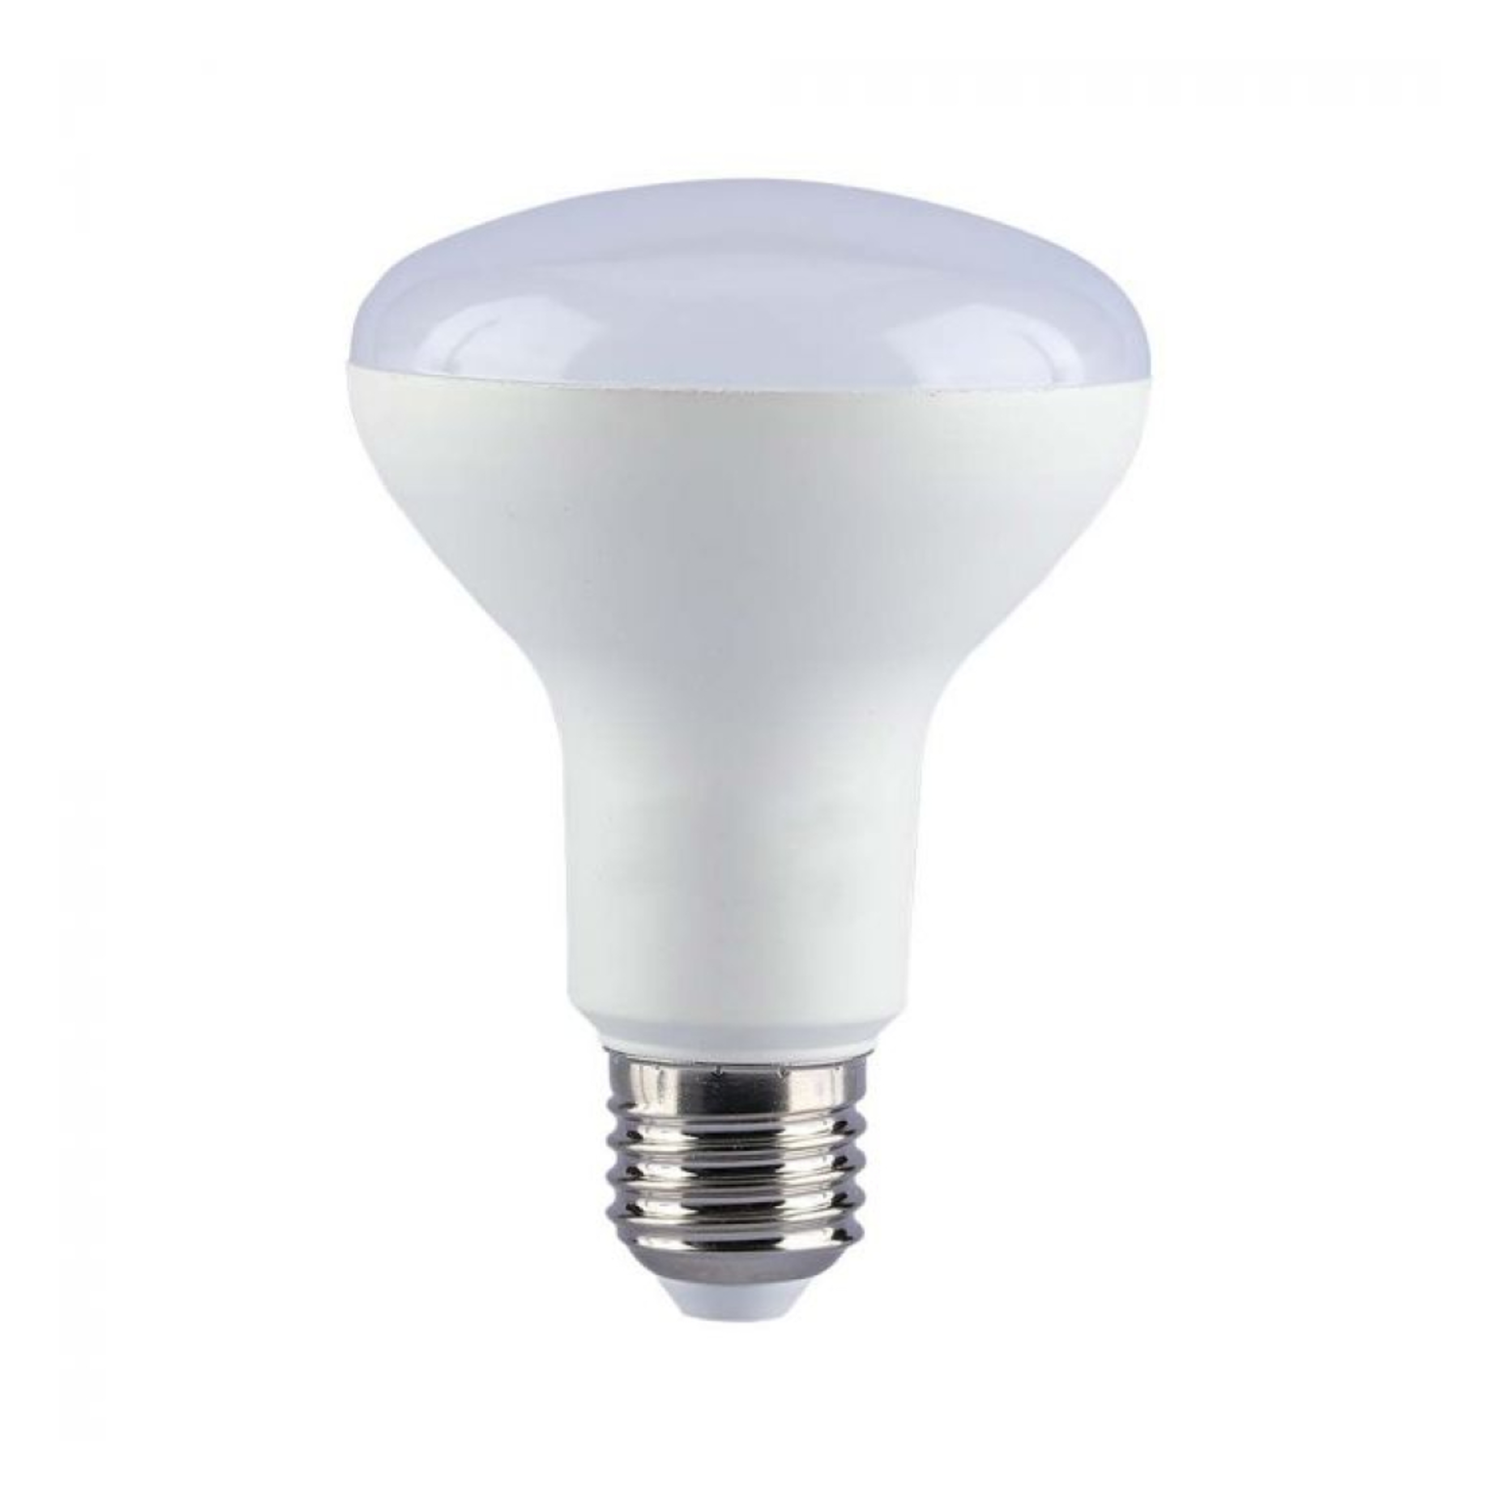 immagine del prodotto lampadina led spot R80